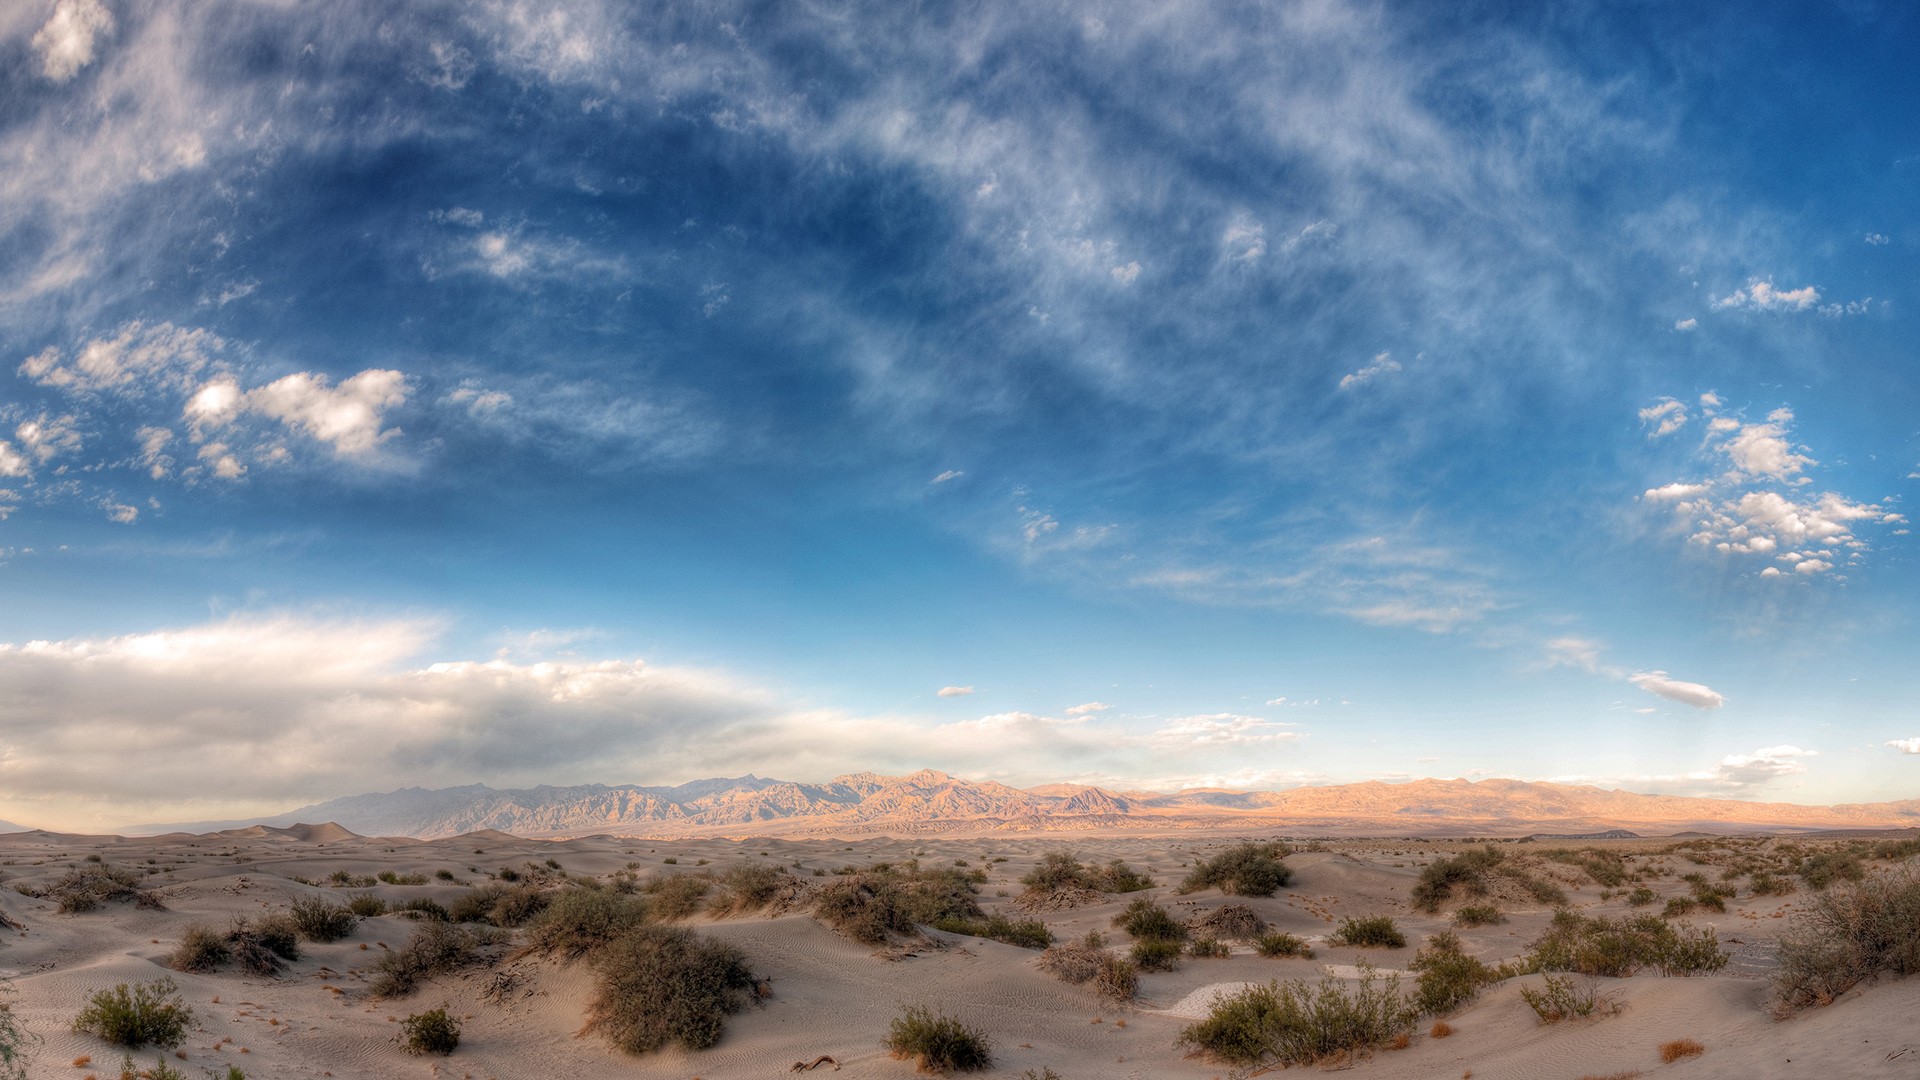 Desert Atacama Desert Shrubs Shrubbery Sand Landscape Sky Mountains Nature 1920x1080